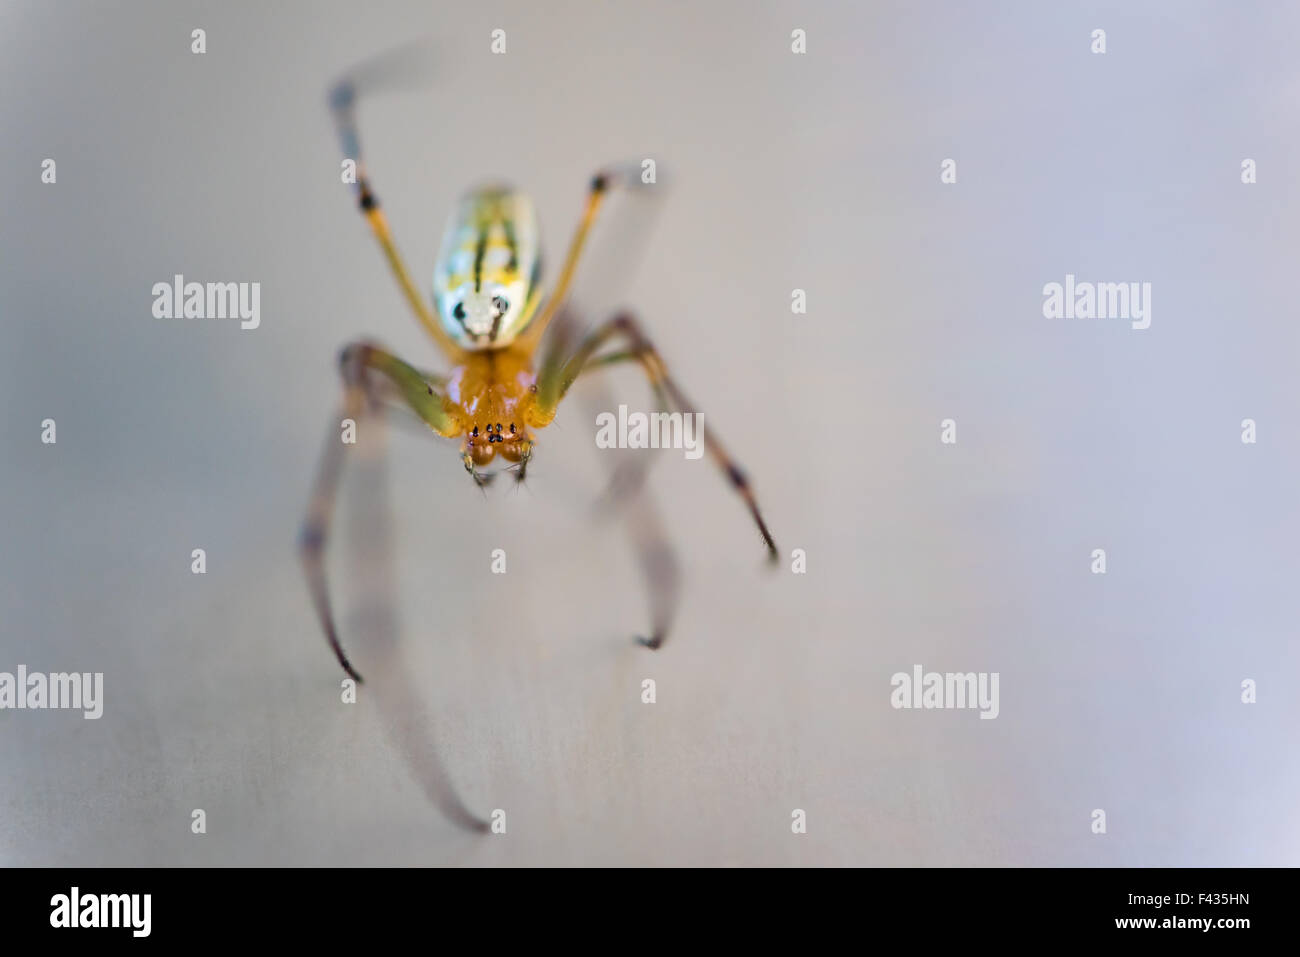 Eine Makroaufnahme einer sehr kleine braune und gelbe Spinne. Stockfoto